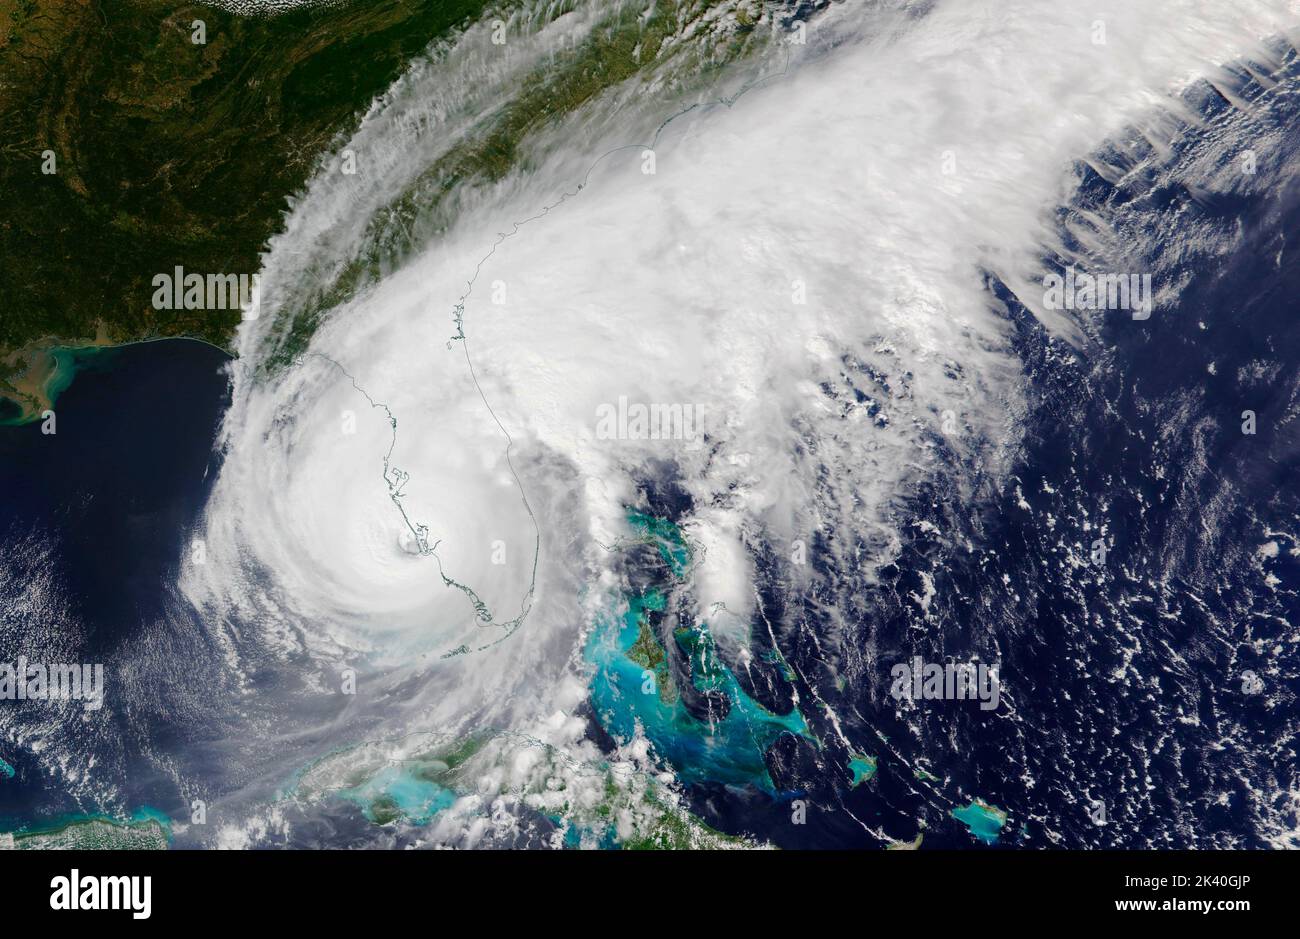 MER DES CARAÏBES - 28 septembre 2020 - les capteurs satellites MODIS de la NASA ont capturé cette image composite de l'ouragan Ian de catégorie 4 qui a touché terre sur les coas Banque D'Images